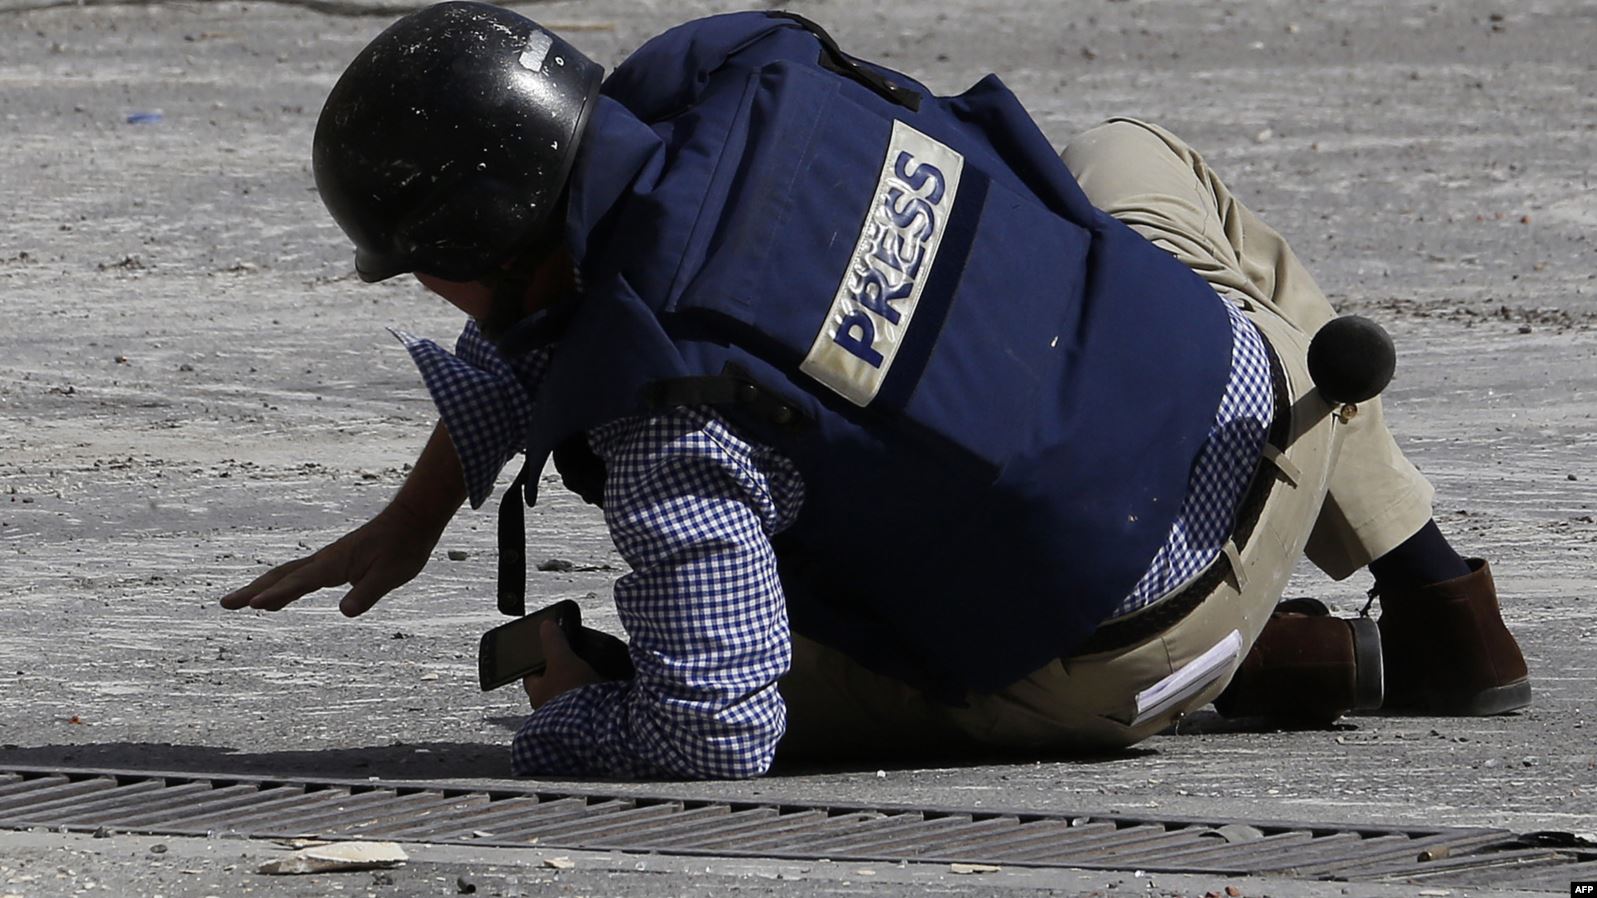 بالأرقام.. تقرير يكشف عن وضع "خطير" للصحفيين في العراق وسوريا